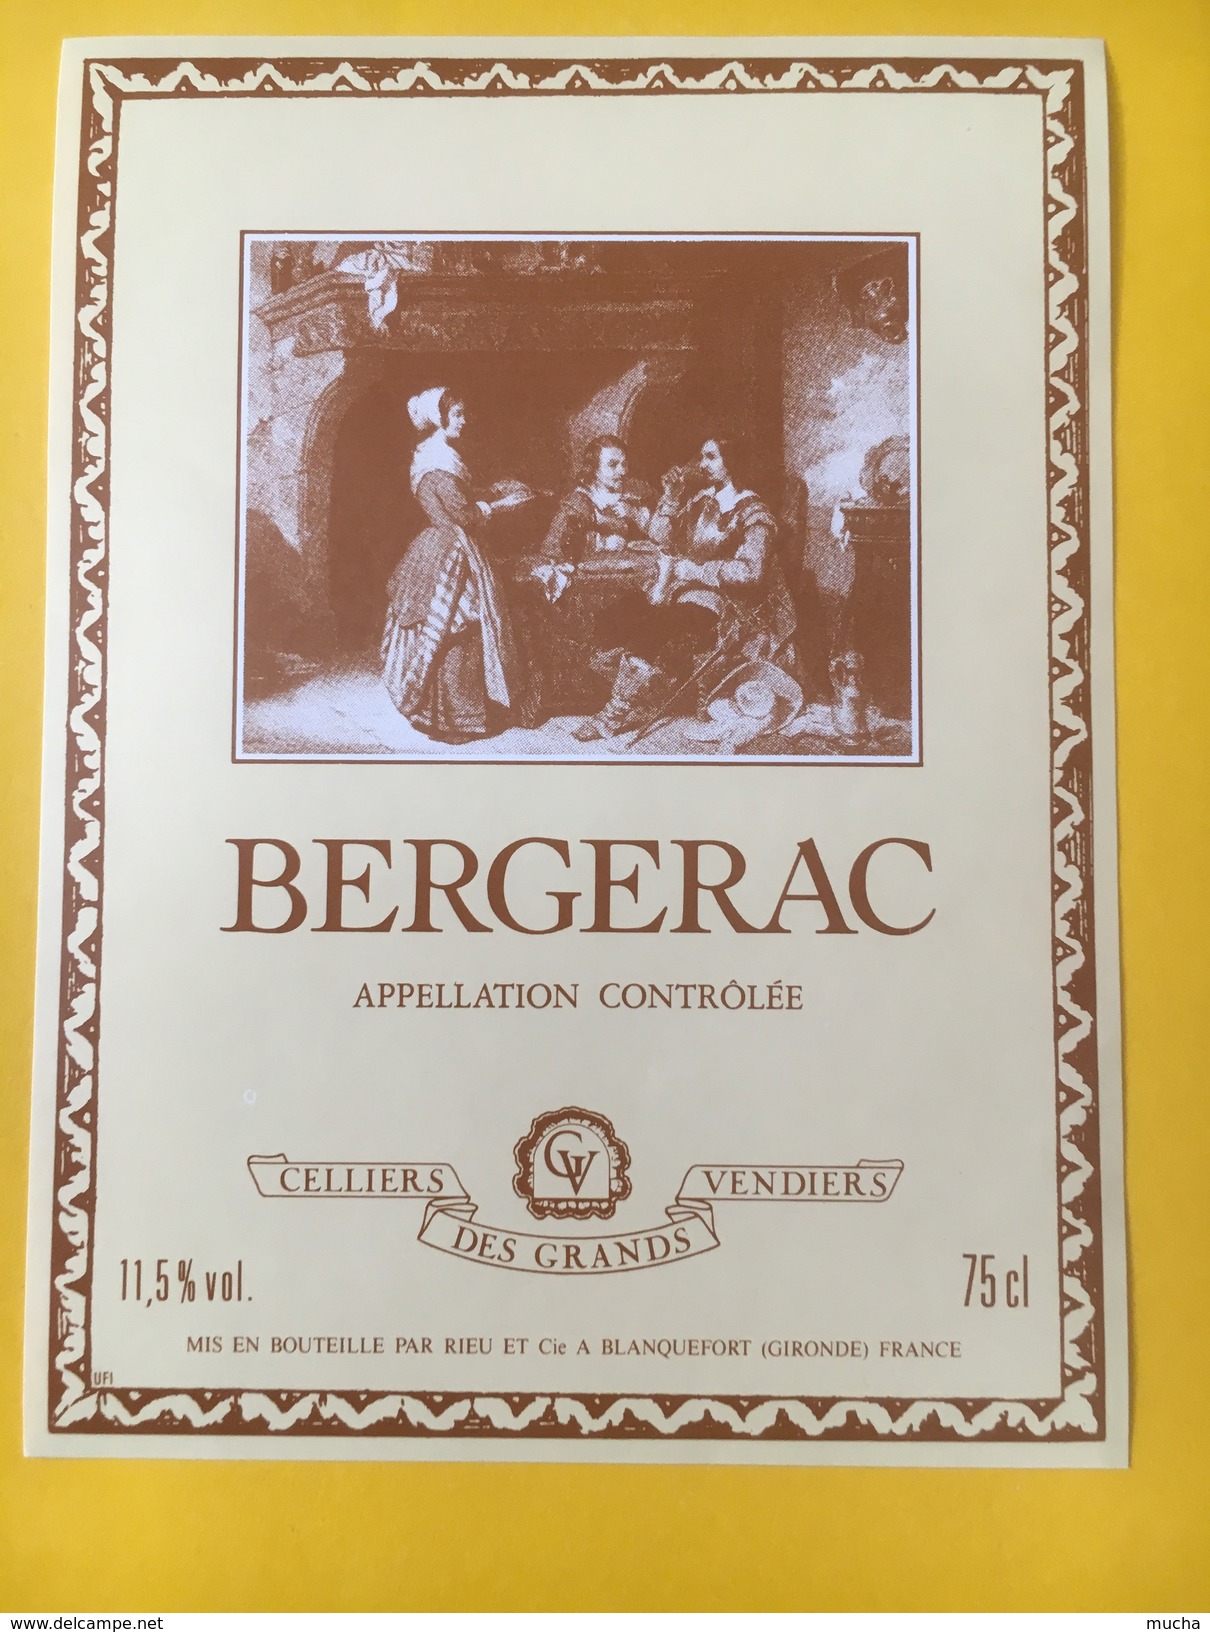 5252 - Bergerac Cellier Des Grands Vendiers - Bergerac